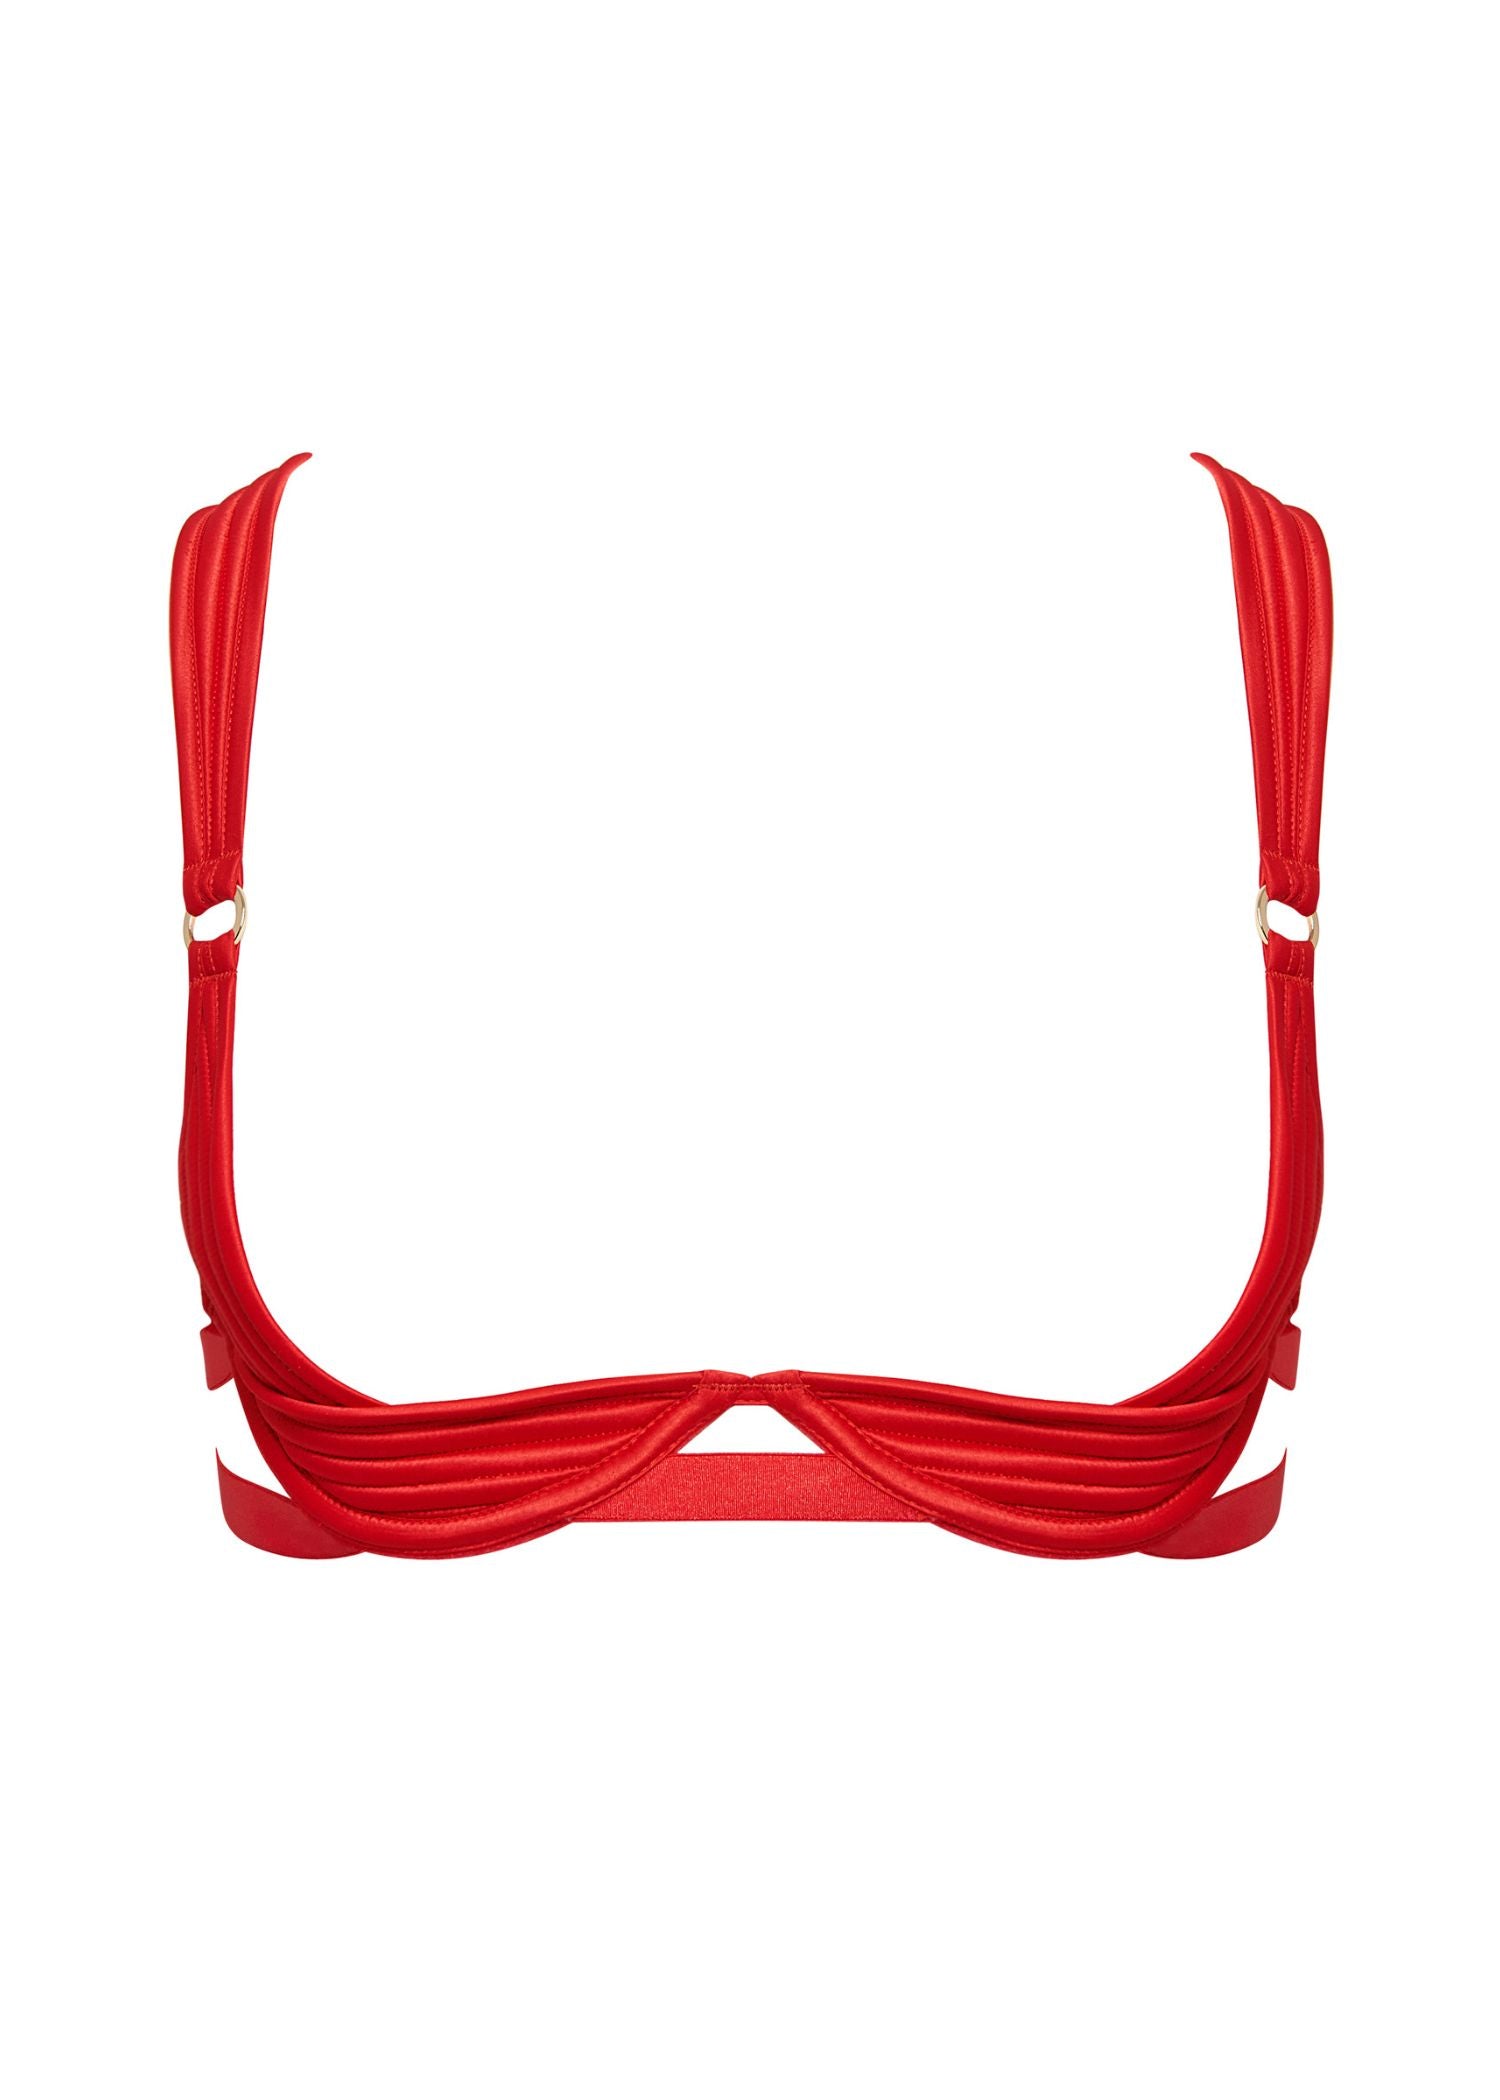 32B Size Bra - Buy 32B Red Padded Bra Online